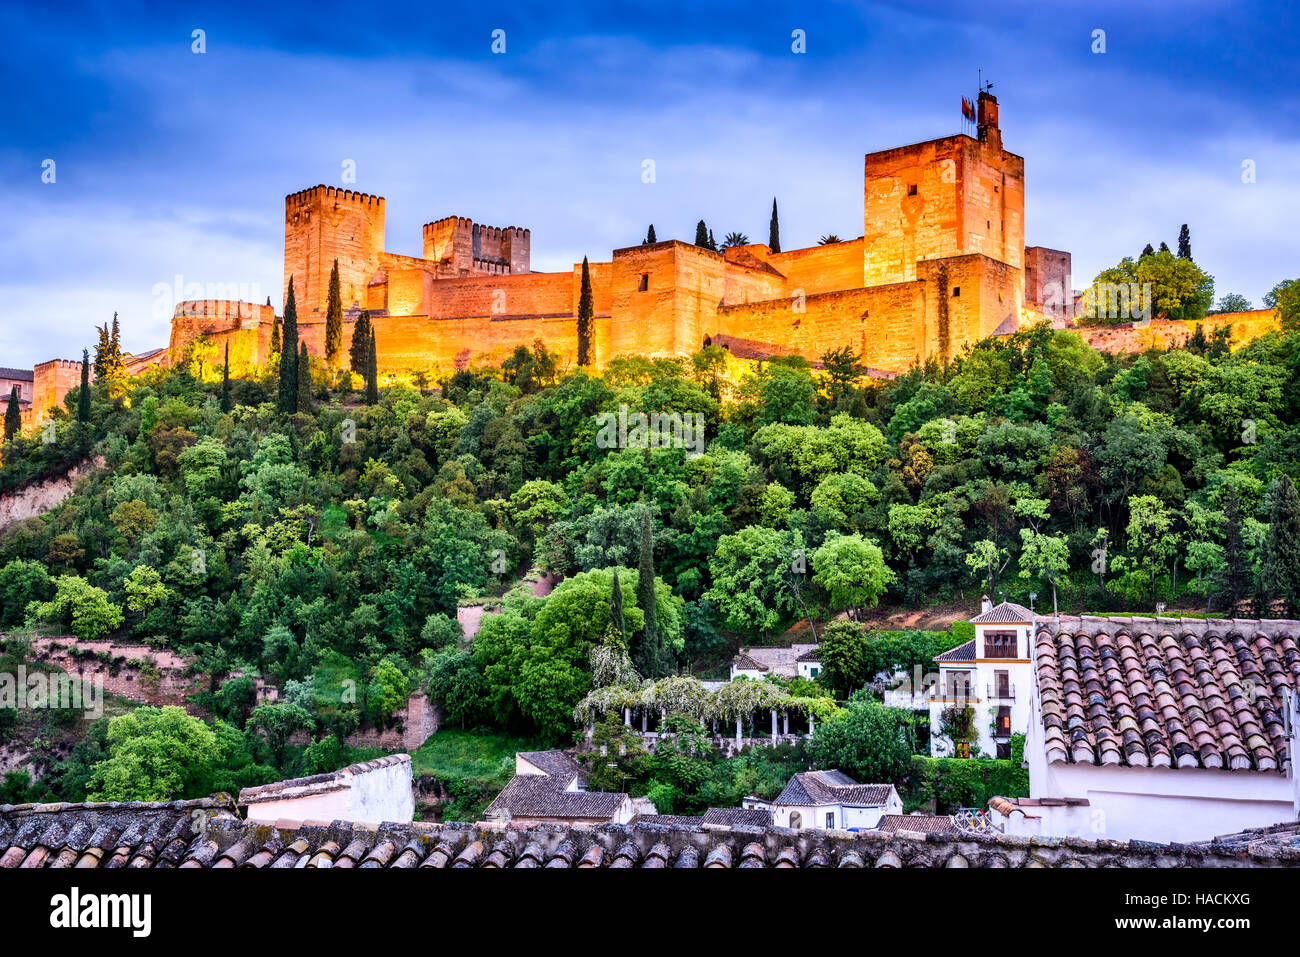 Granada, Espagne. Vue de nuit sur la célèbre Alhambra avec l'Alcazaba, les voyages en Europe vue en Andalousie. Banque D'Images